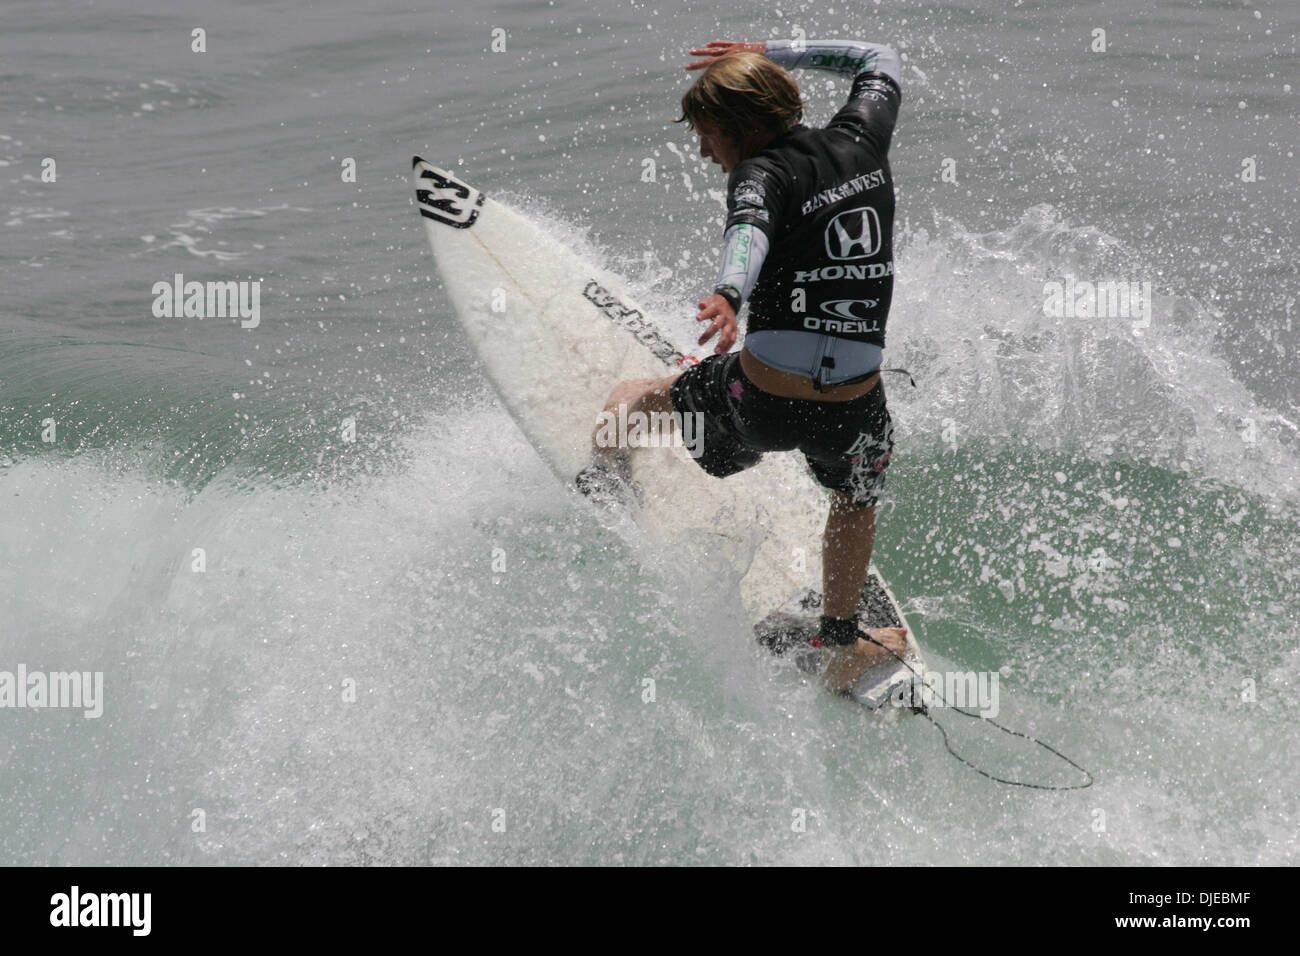 Aug 01, 2004 ; Huntington Beach, CA, USA ; surfeur australien TAJ BURROW attrape une vague avec style et gagne l'US Open 2004 Honda championnats de surf à Huntington Beach. Banque D'Images